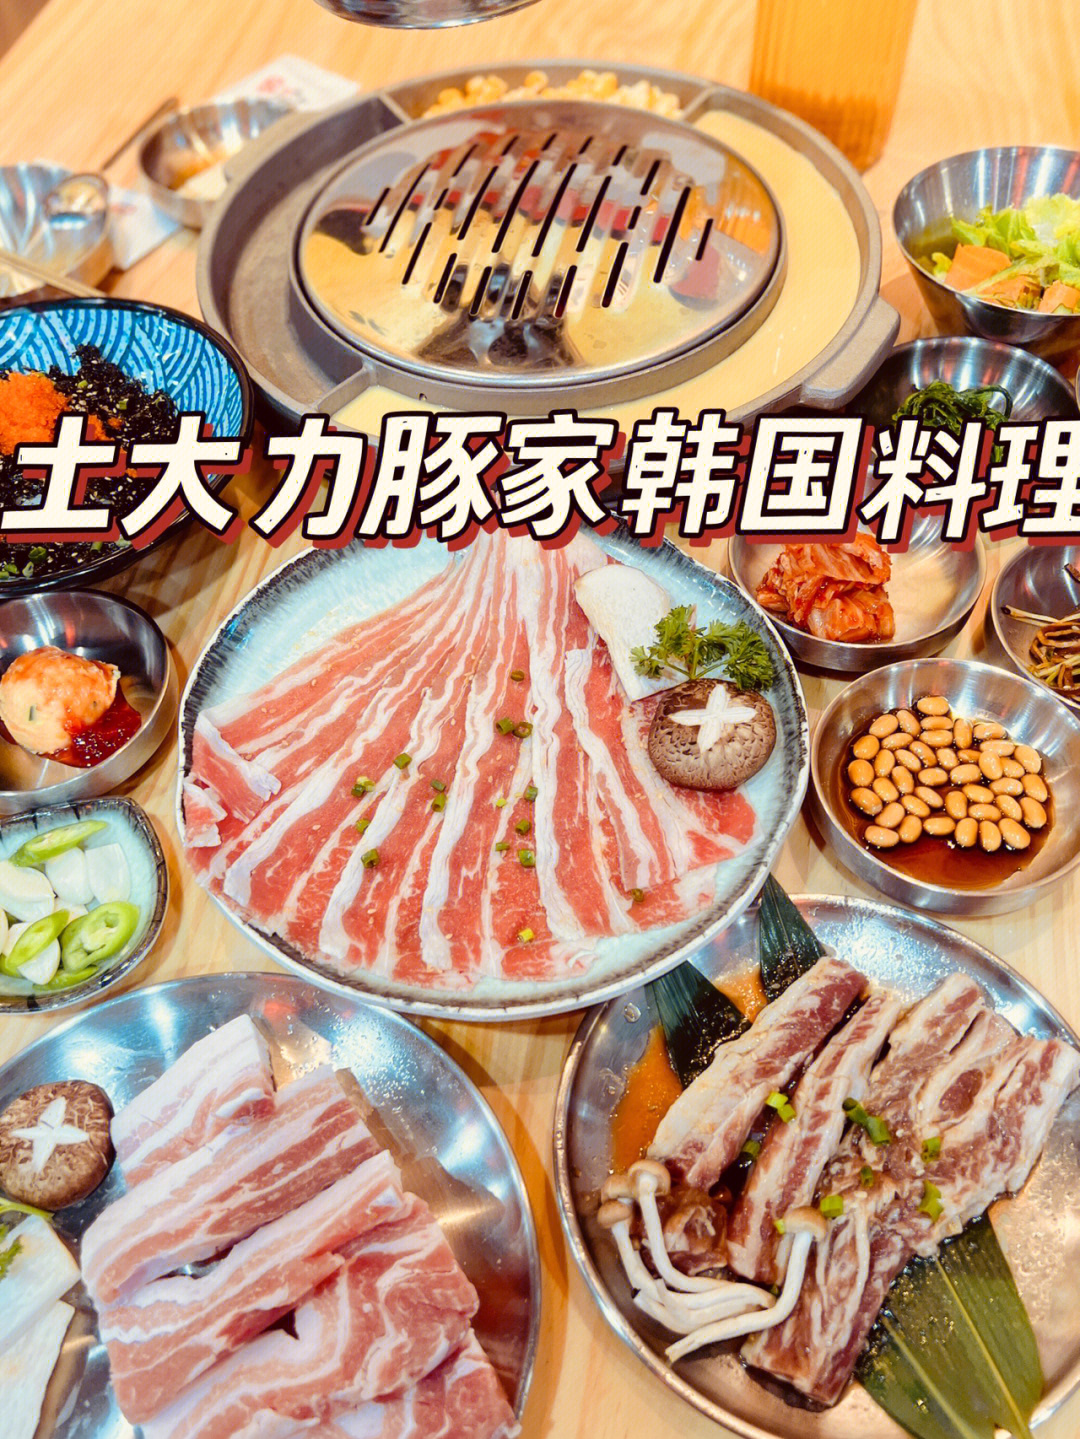 土大力韩国料理菜单图片